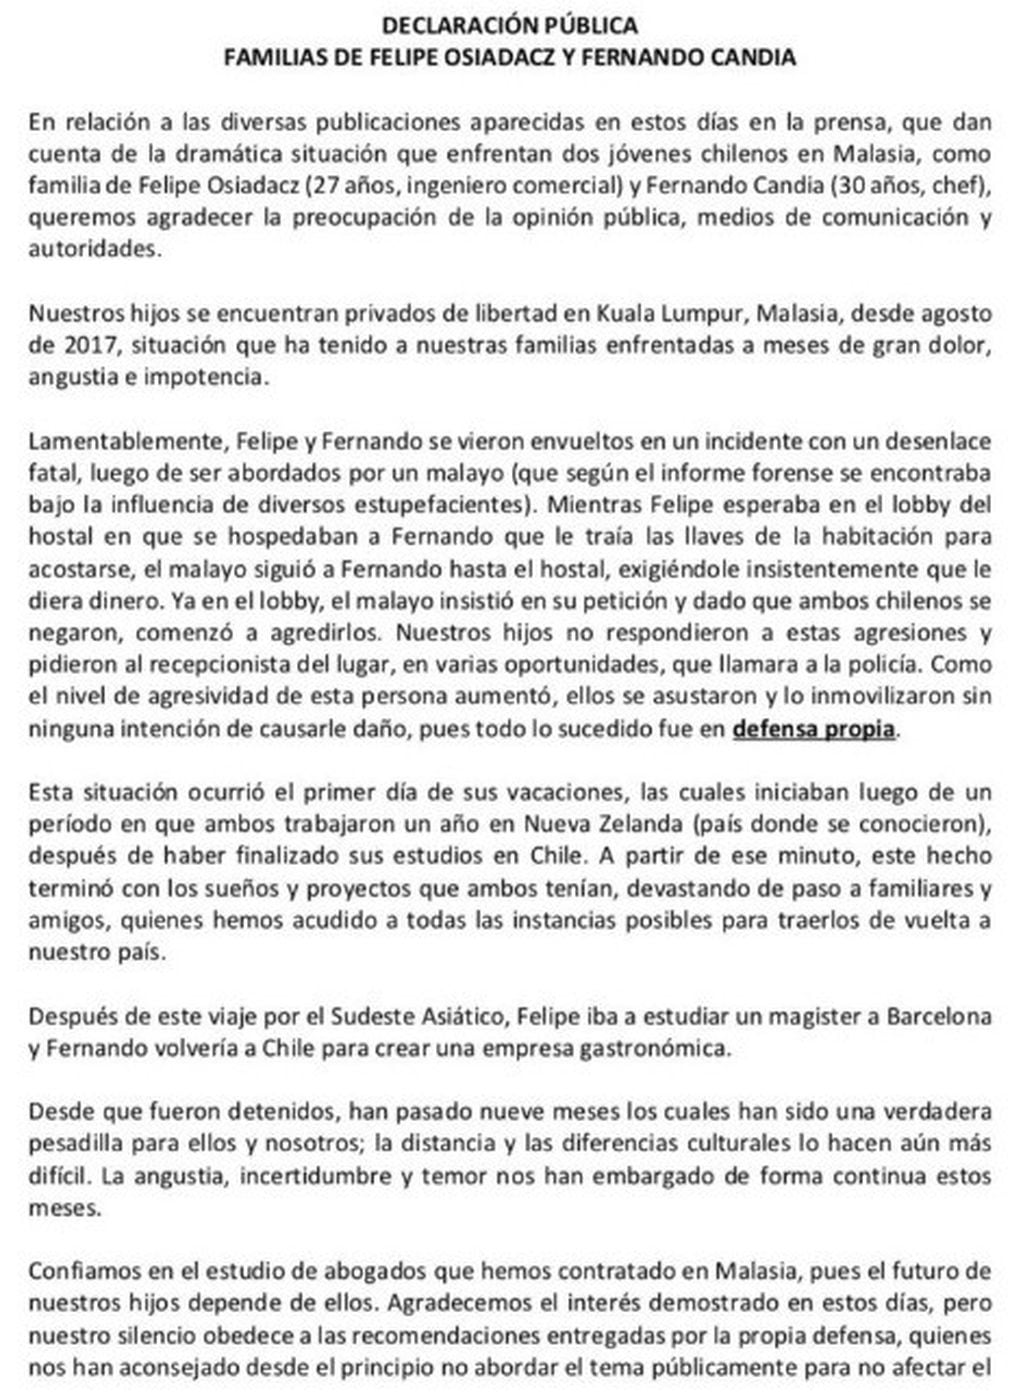 El comunicado de las familias de Felipe Osiadacz y Fernando Candia